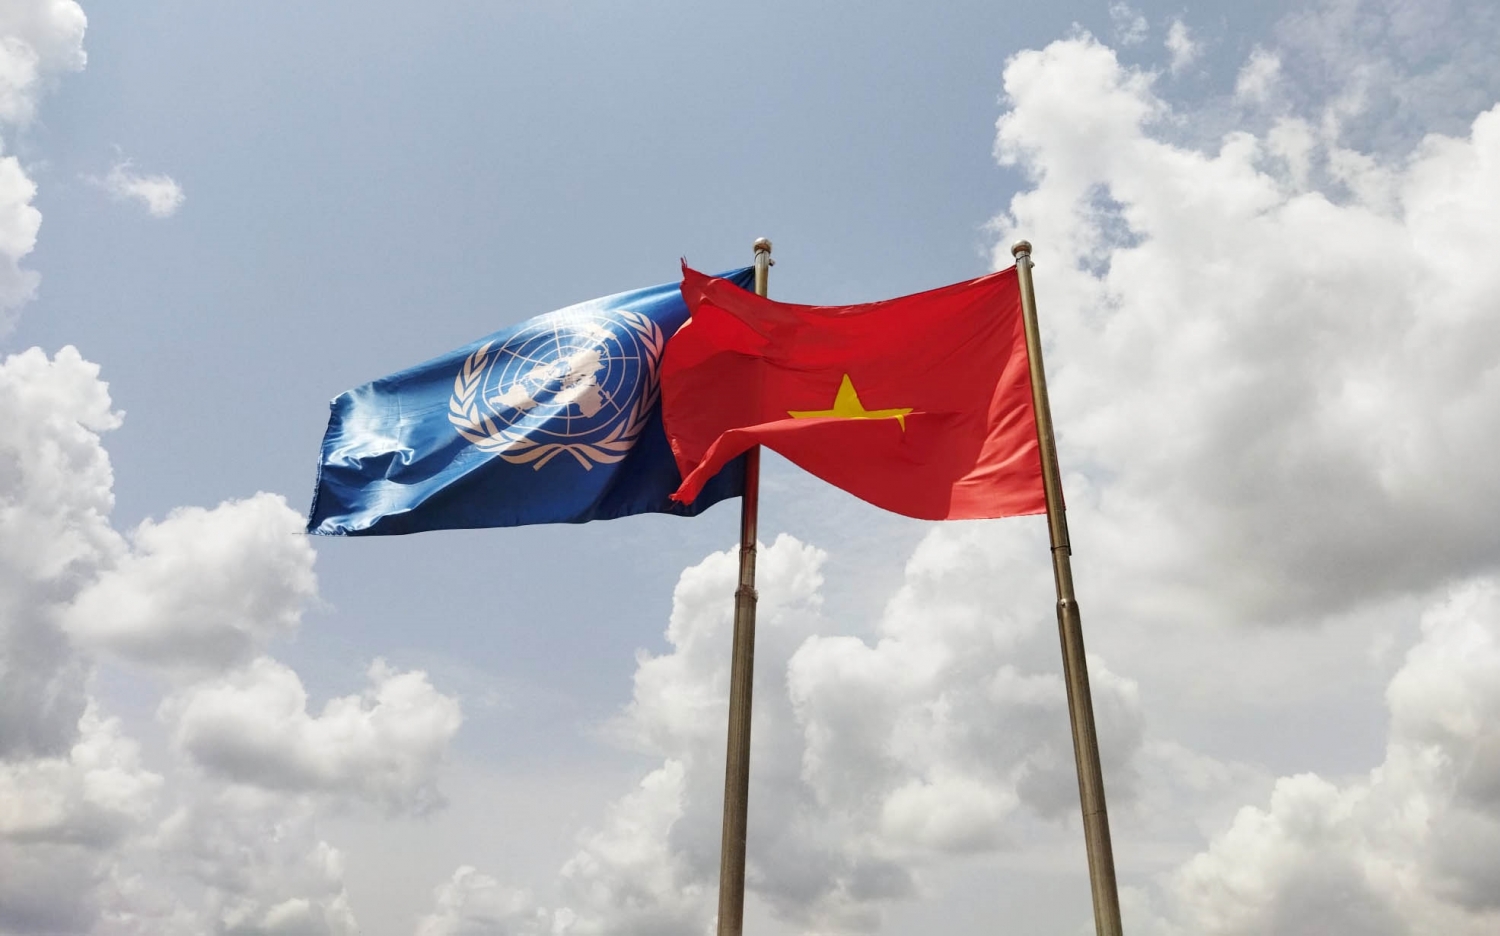 Quan hệ Việt Nam và Liên hợp quốc: Là một thành viên chính thức của Liên Hợp Quốc kể từ 21/9/1977, quan hệ giữa Việt Nam và Liên Hợp Quốc luôn được duy trì và phát triển tốt đẹp theo thời gian. Việt Nam đã đóng góp tích cực vào nhiều hoạt động quan trọng của Liên Hợp Quốc.